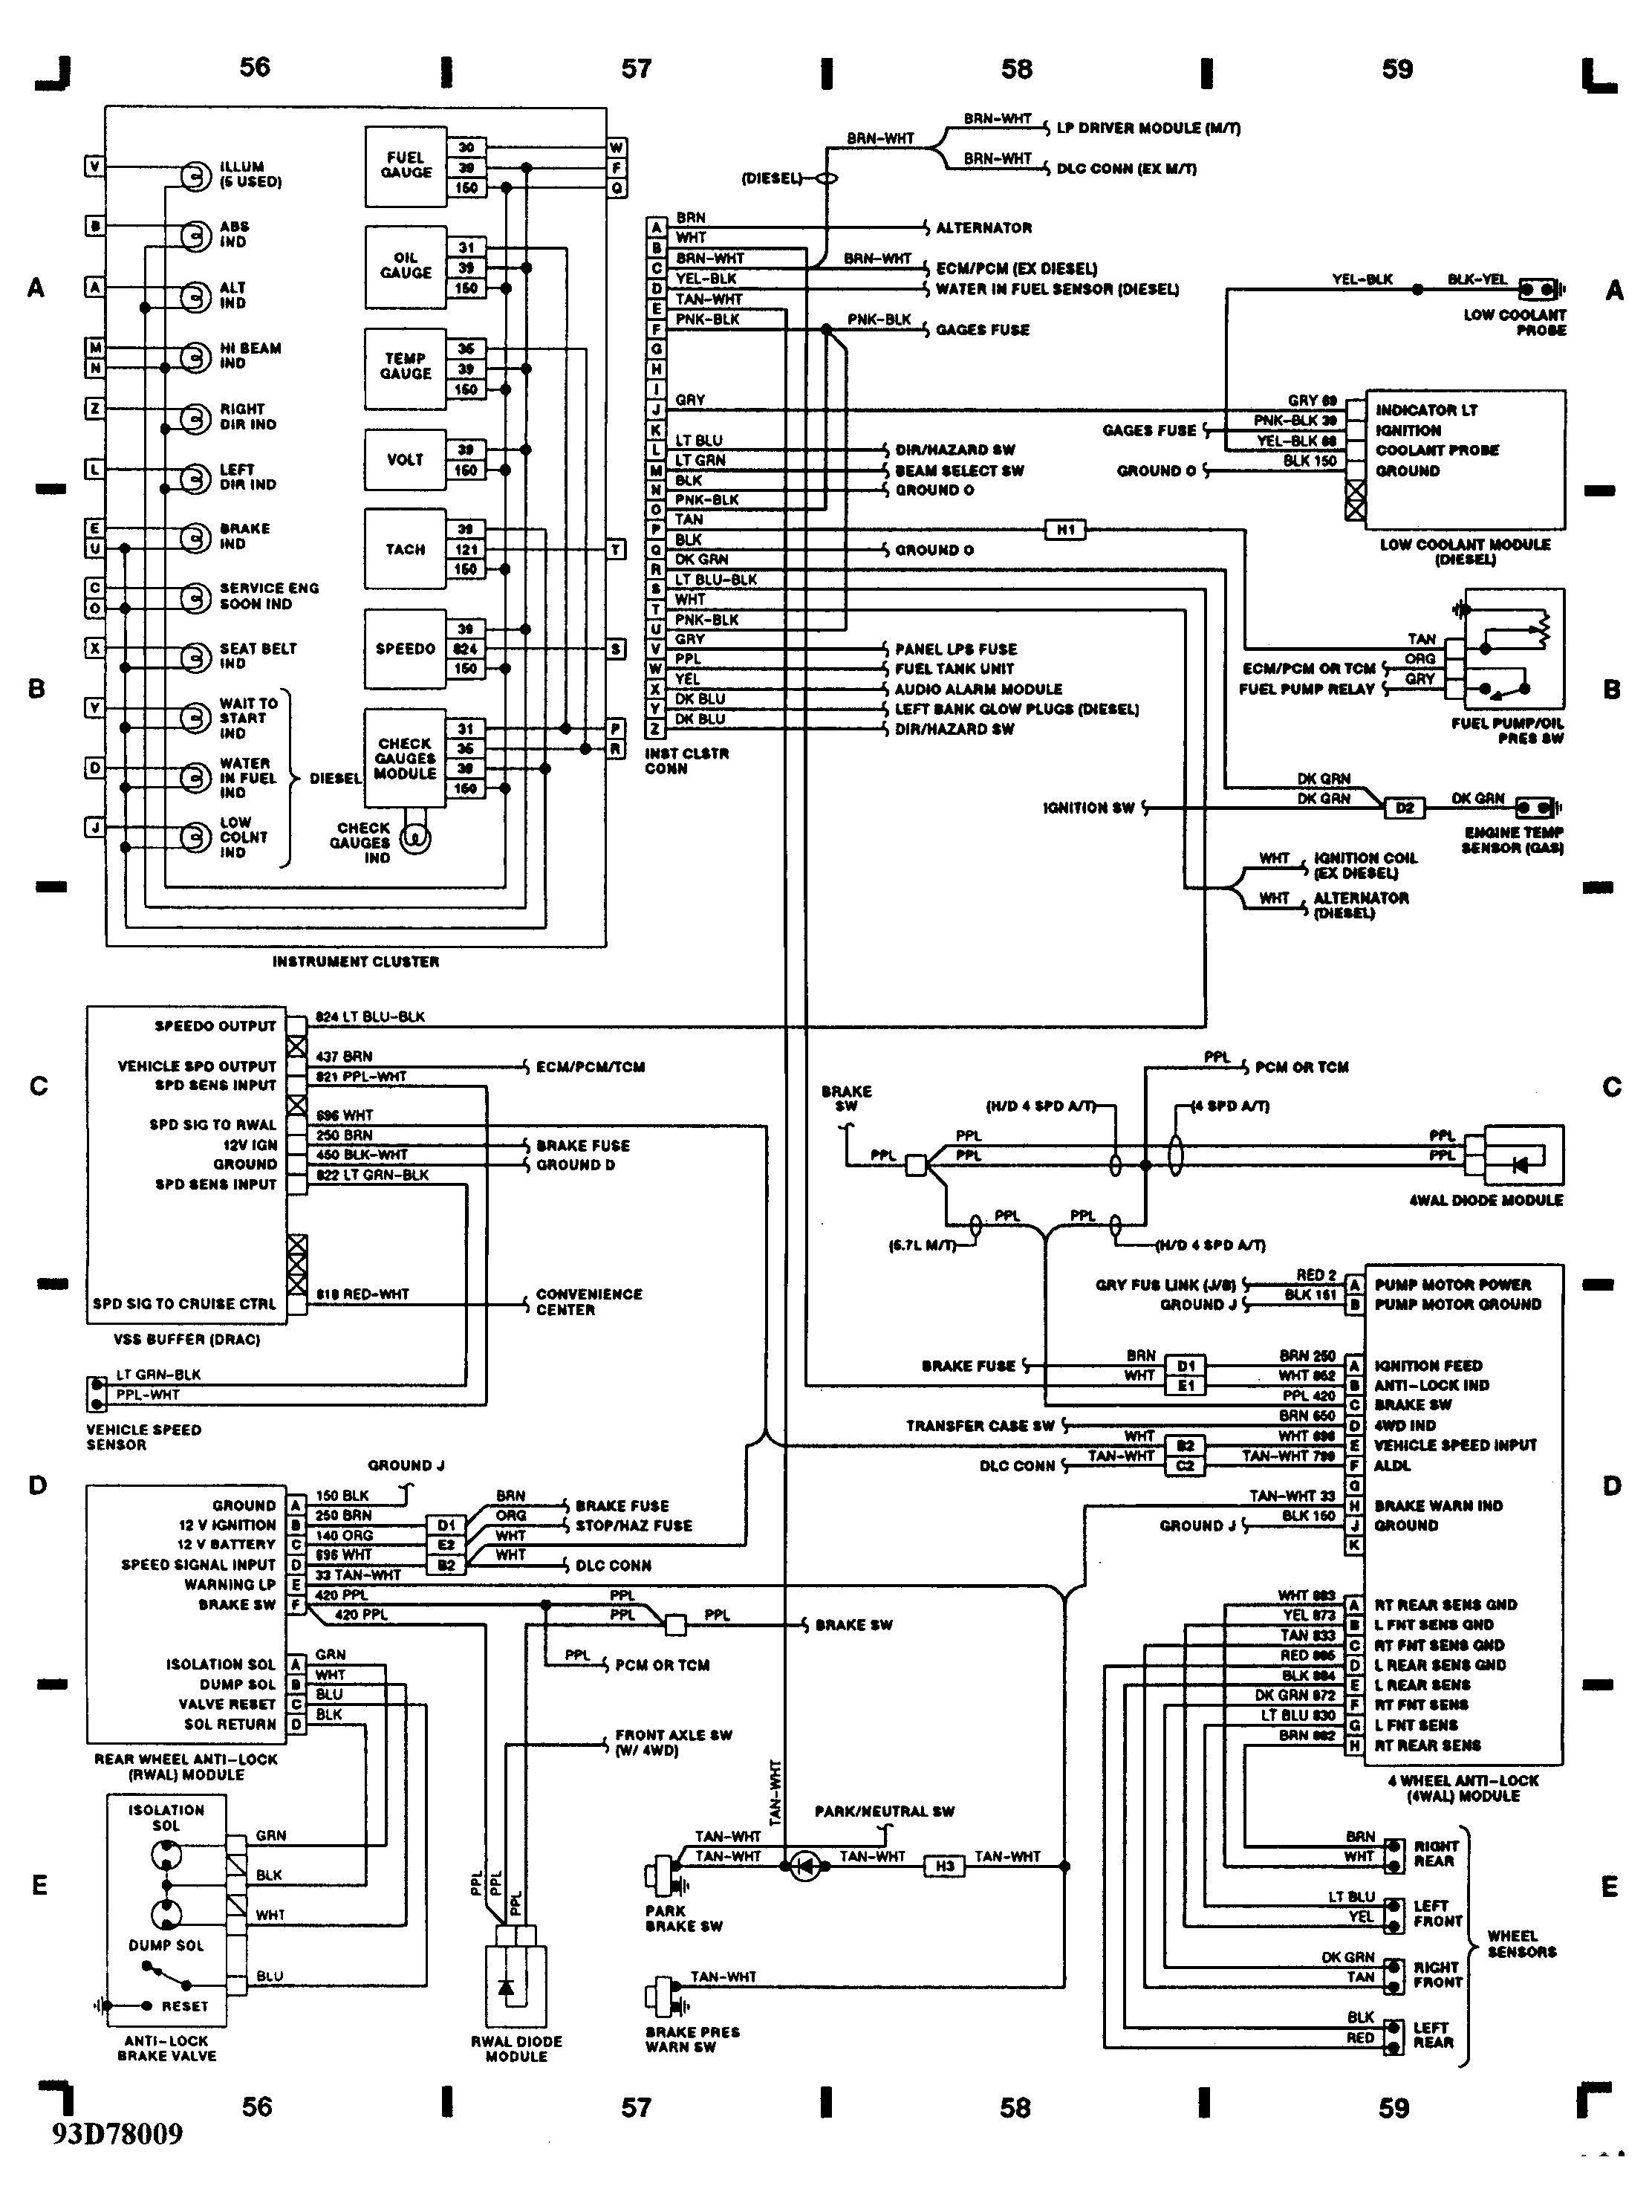 Chevy S10 Wiring Schematic Schematic Wiring Diagram